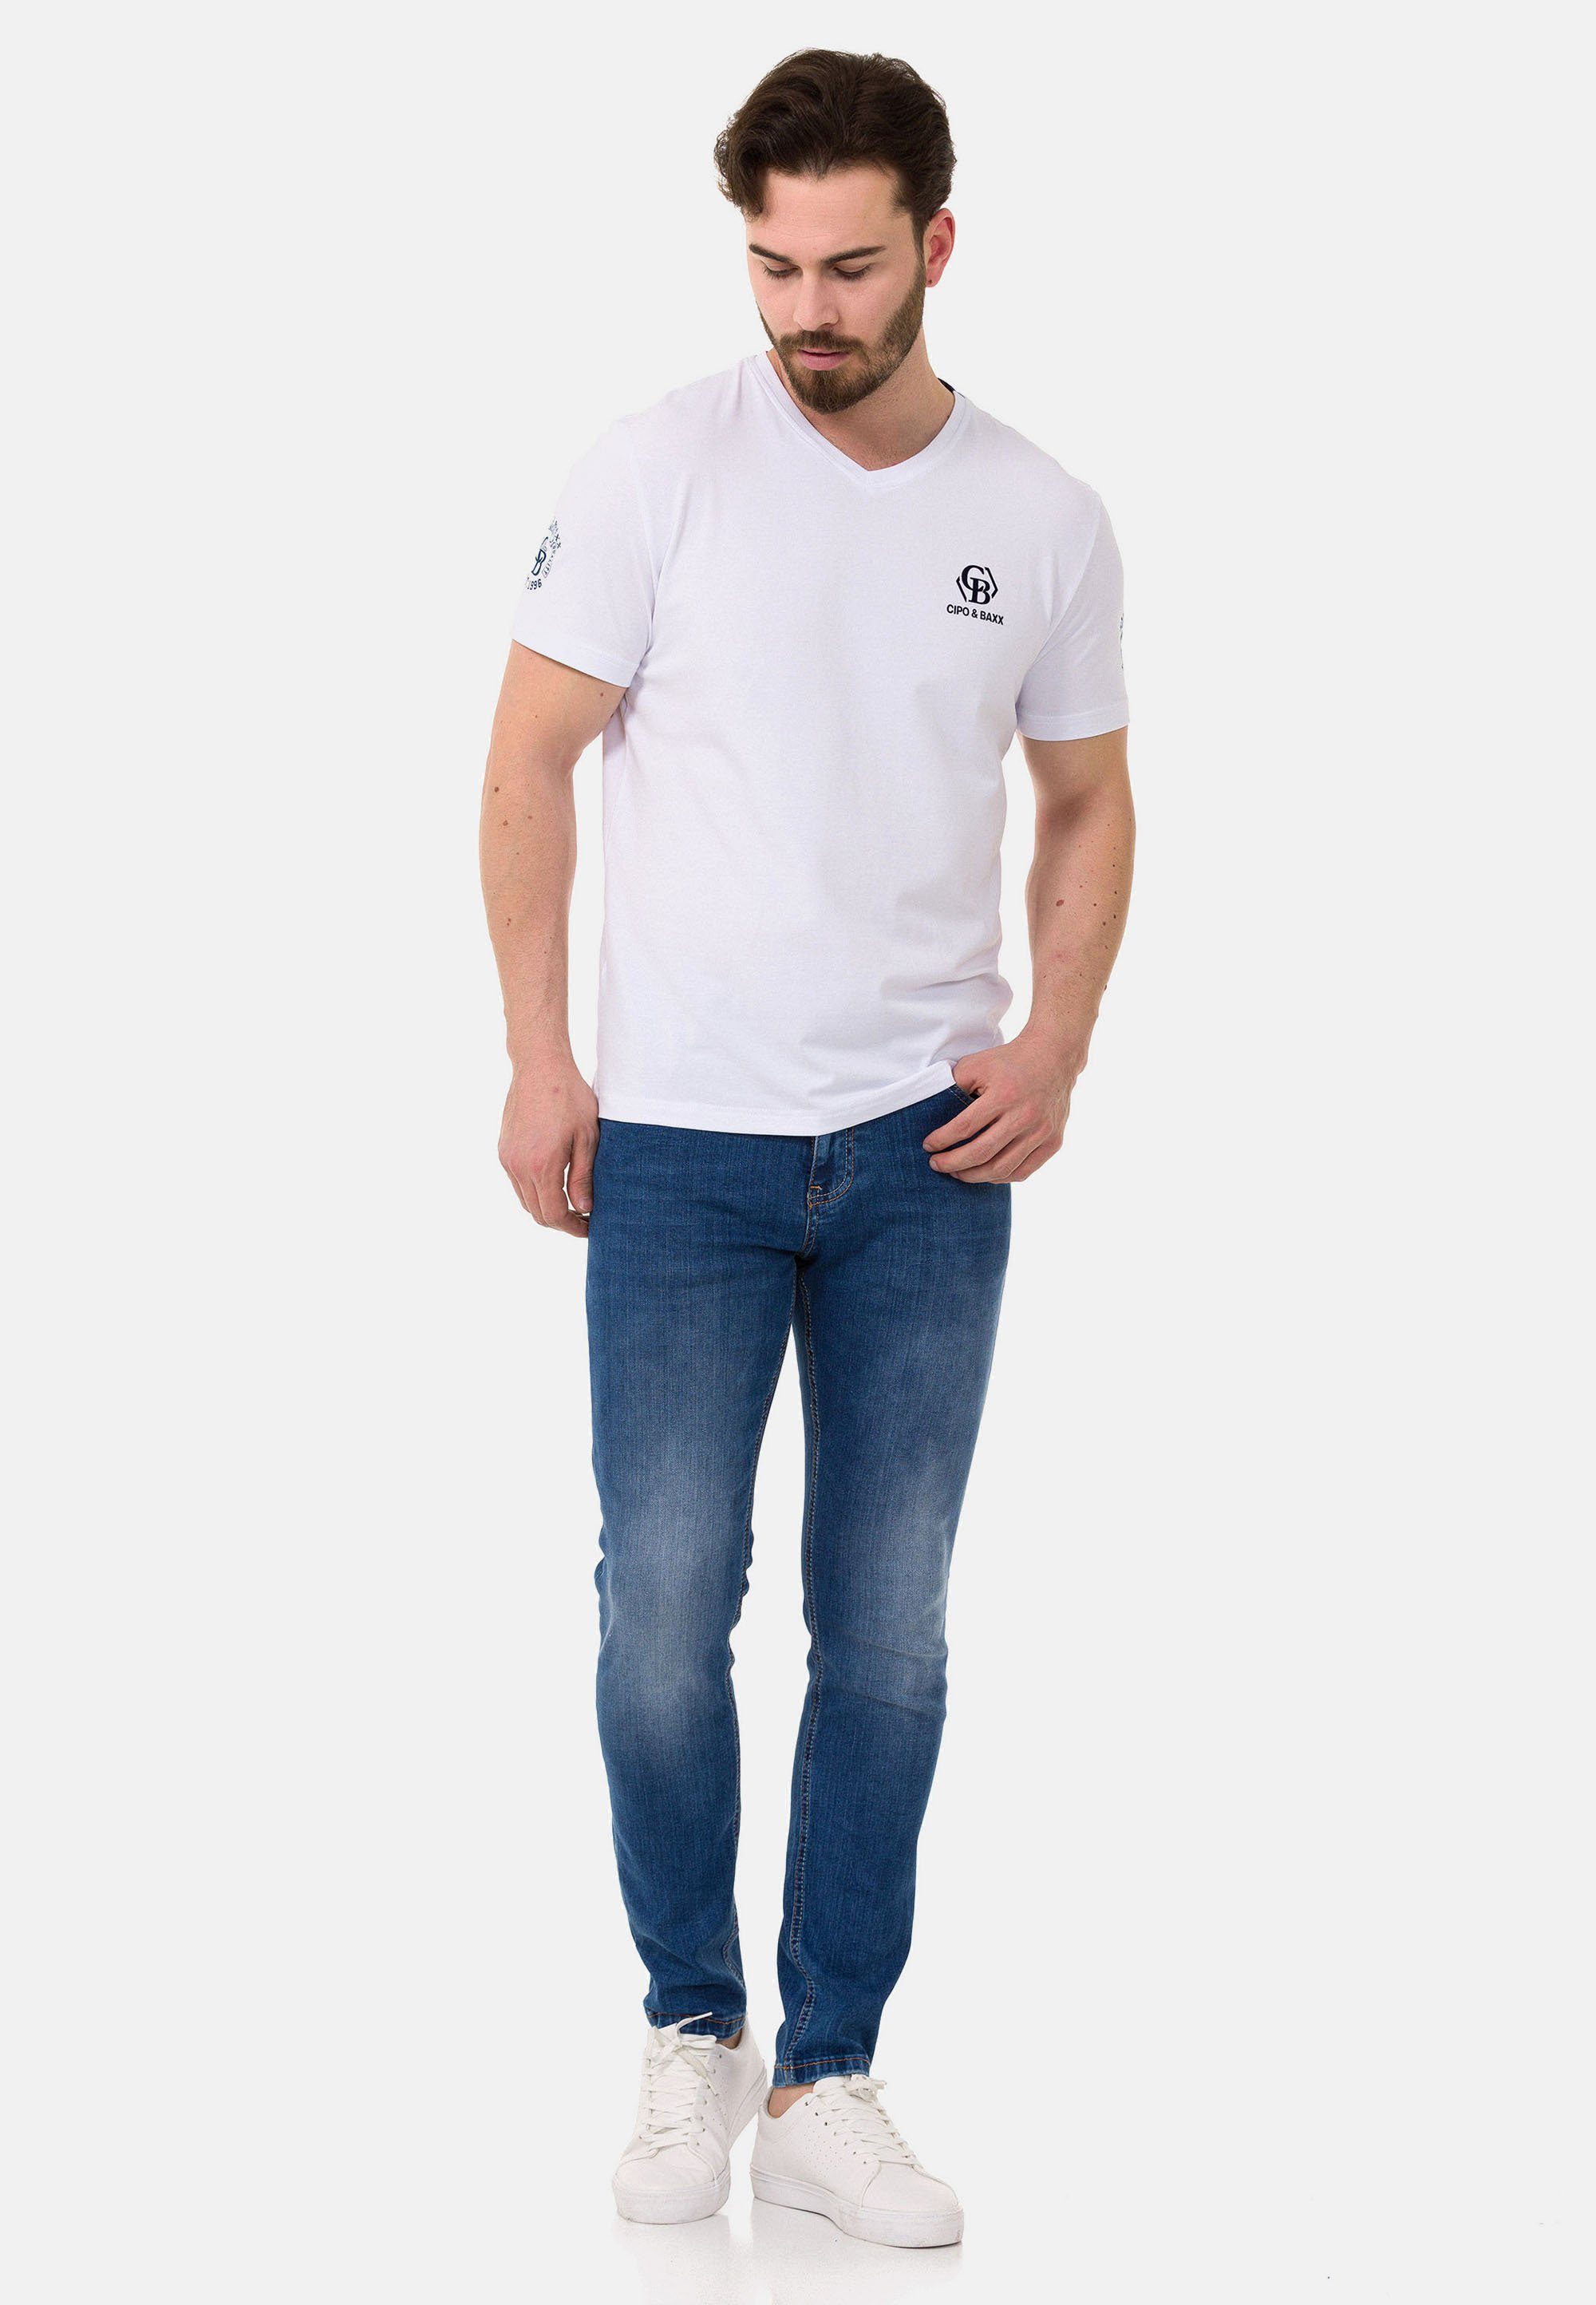 dezenten & T-Shirt Markenlogos mit Cipo Baxx weiß